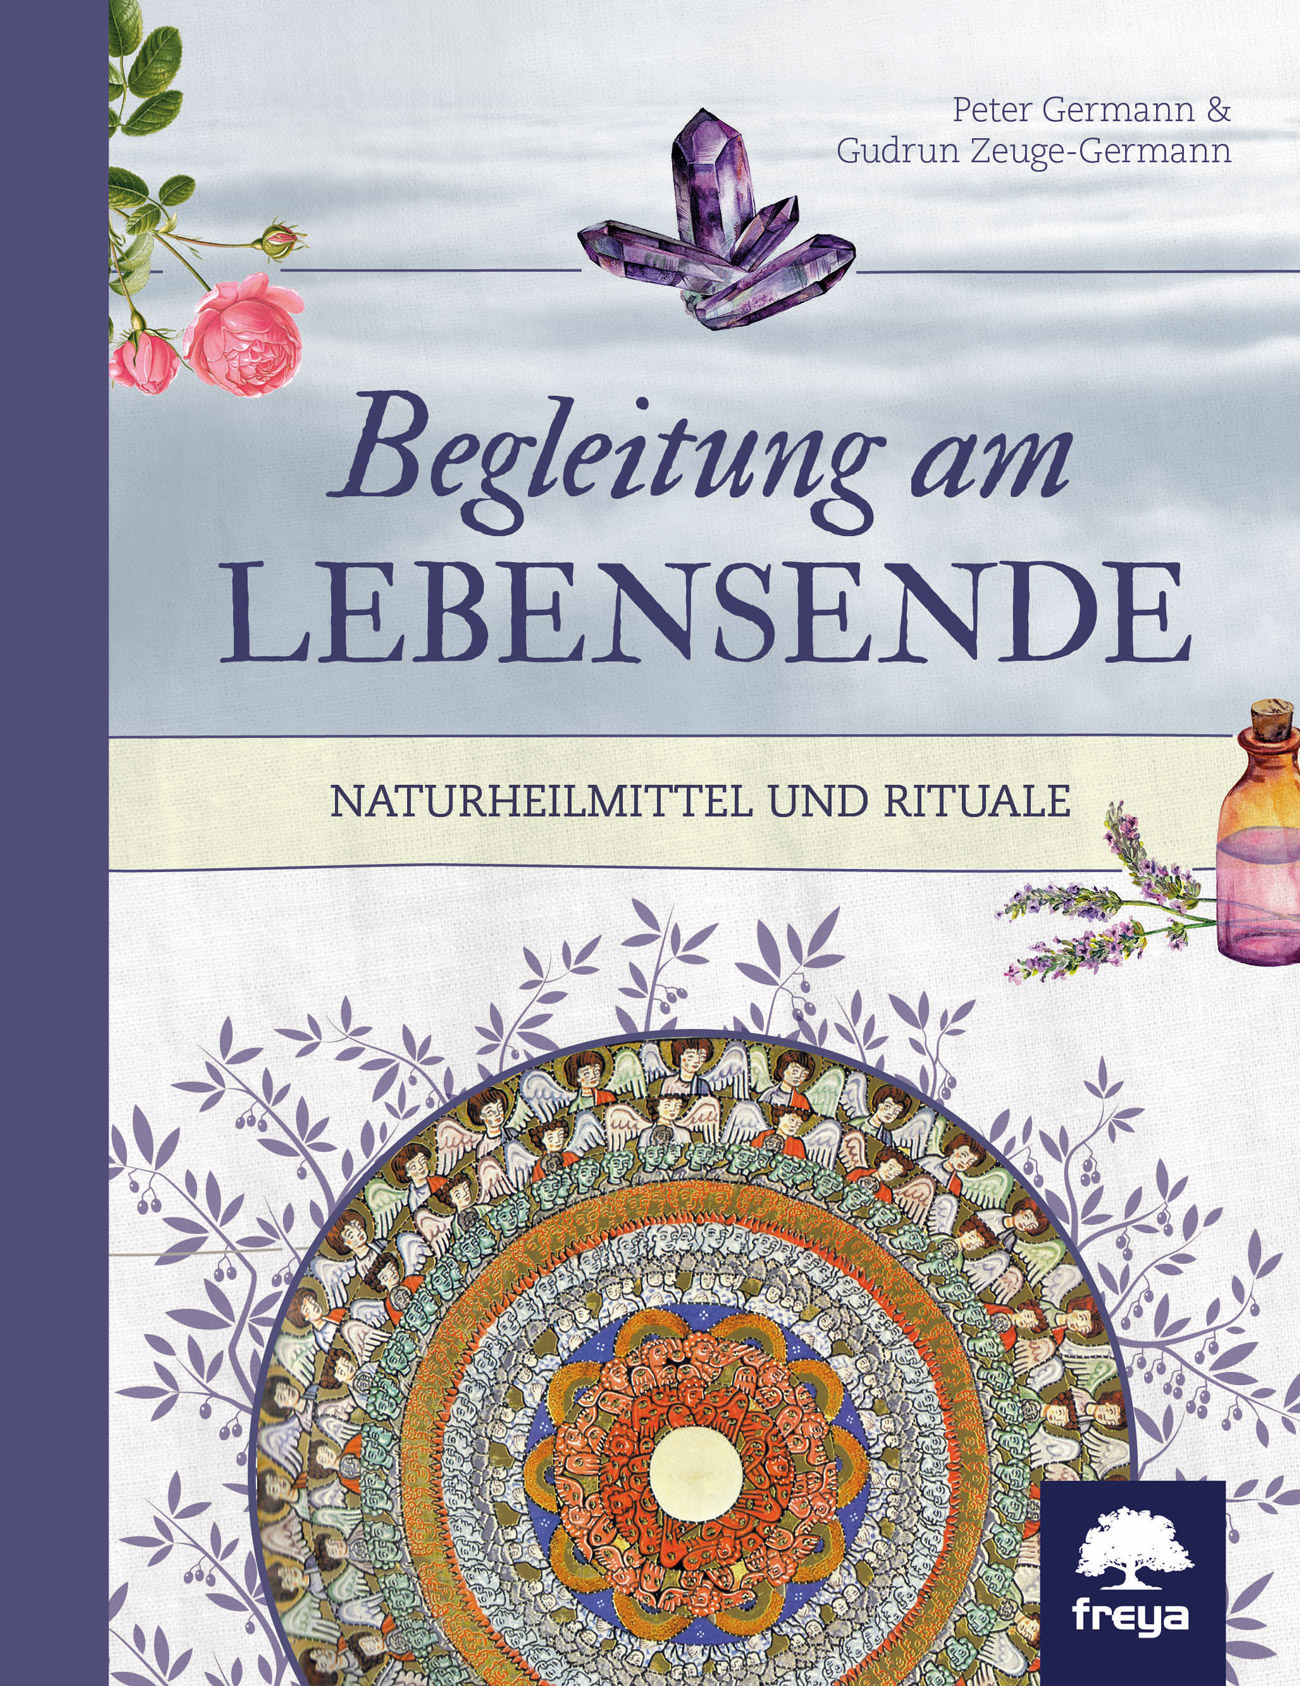 Peter Germann; Gudrun Zeuge-Germann / Begleitung am Lebensende